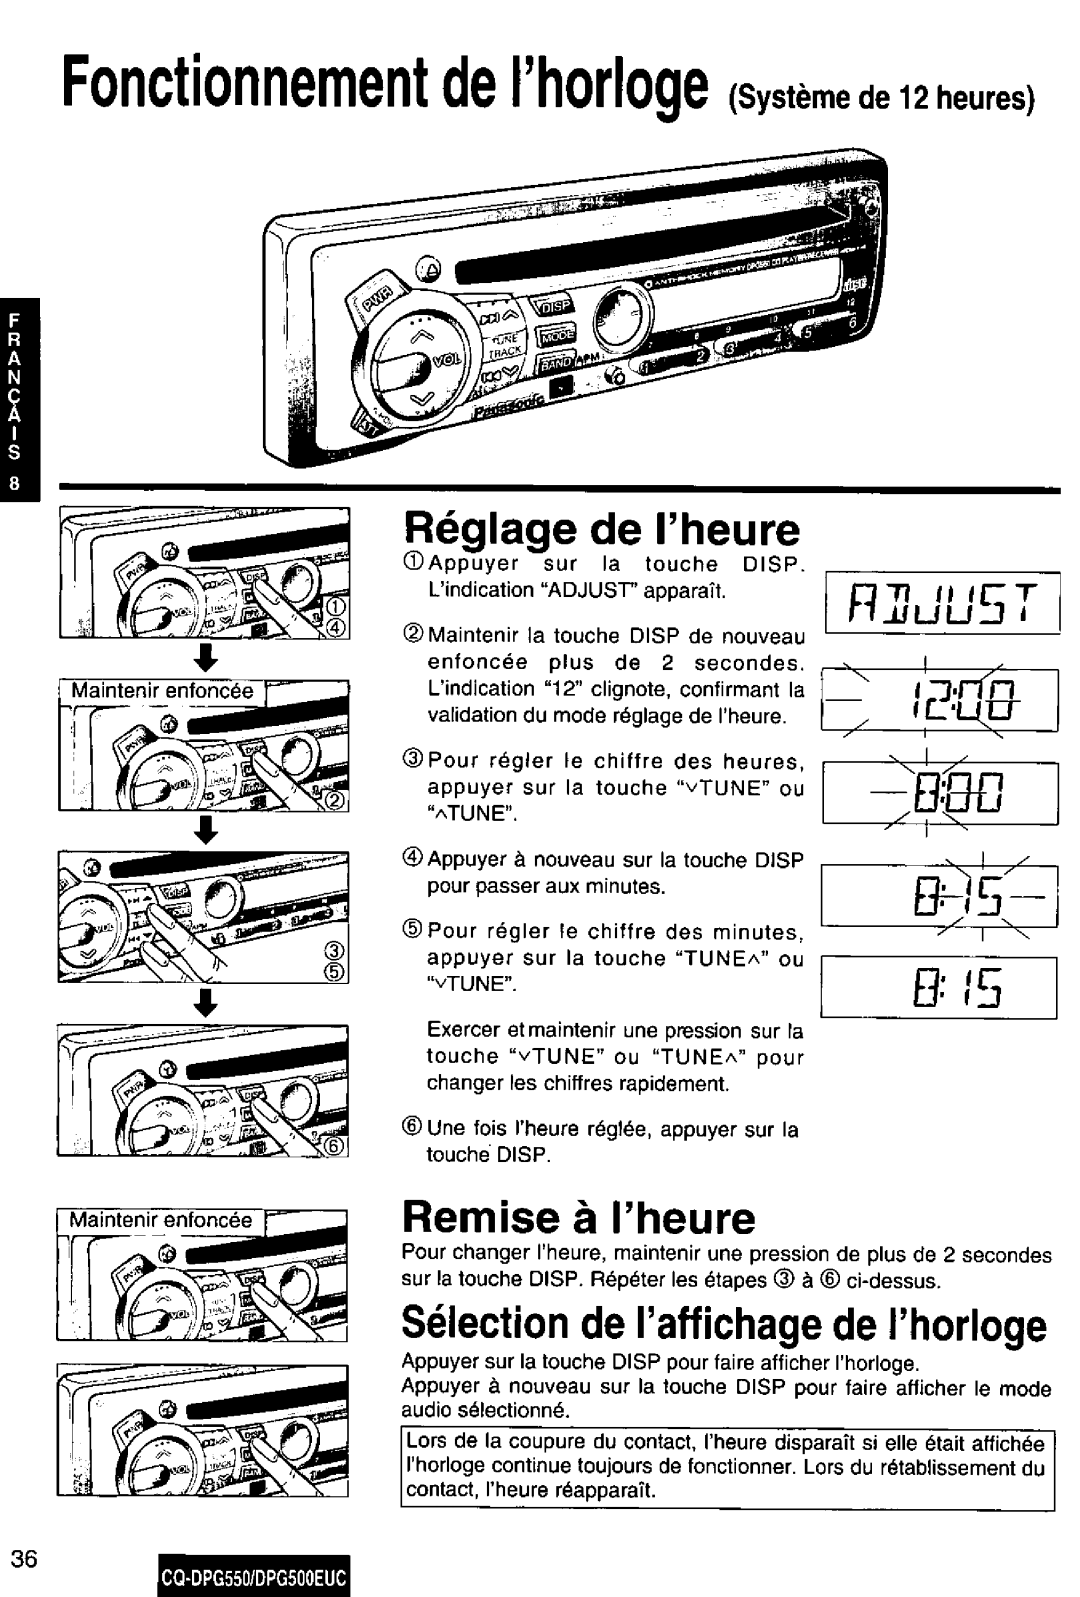 Panasonic CQ-DPG550, DPG500EUC manual 